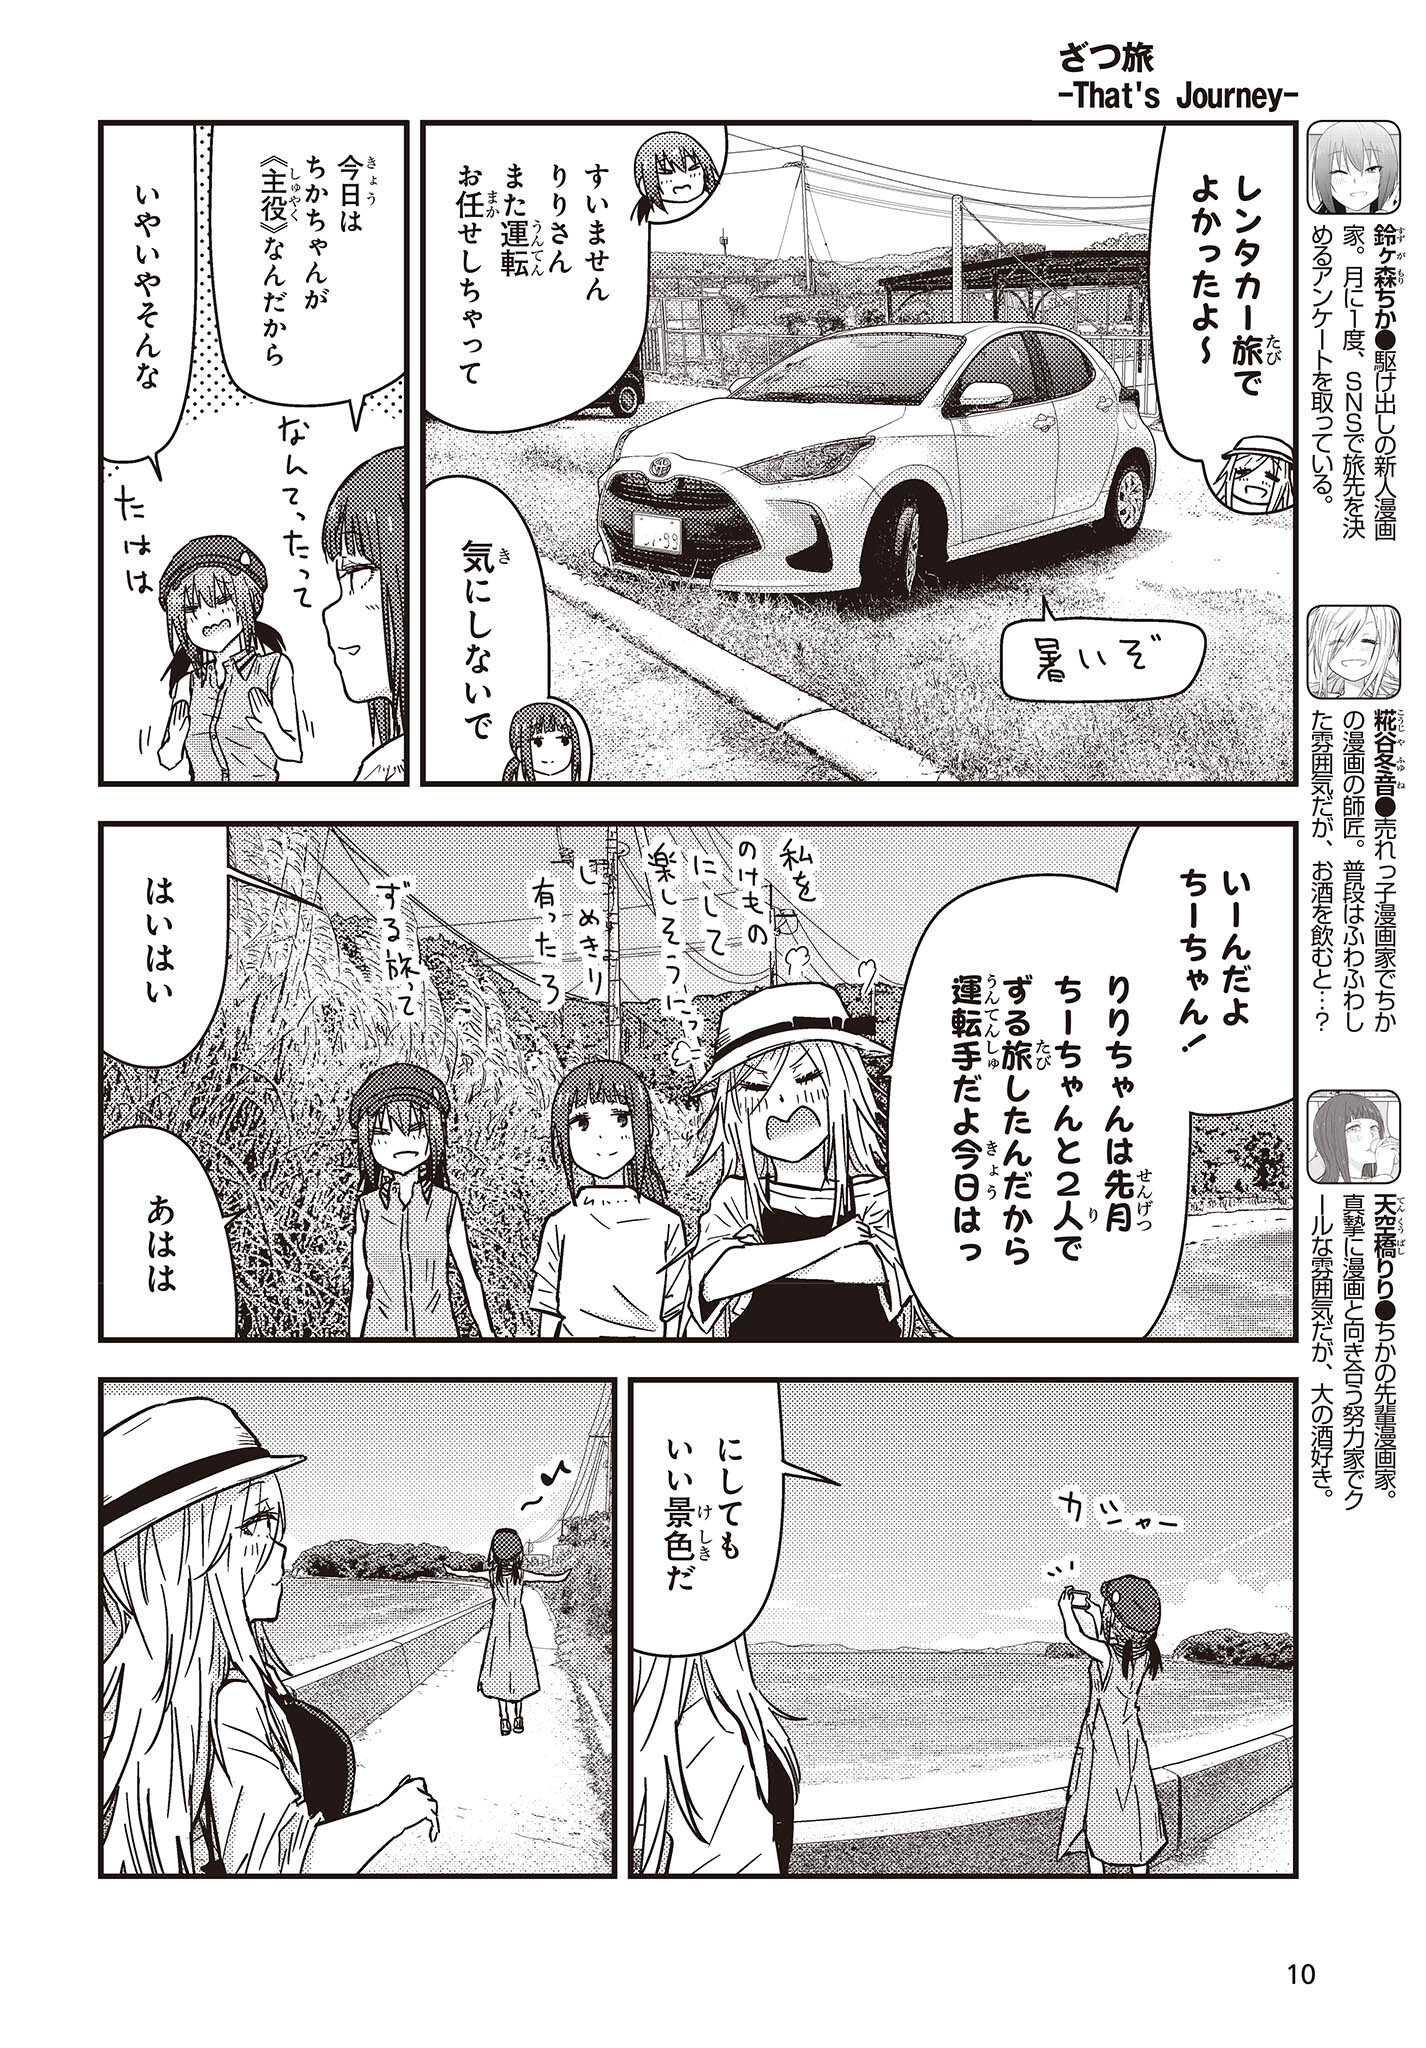 ざつ旅-That’s Journey- 第33話 - Page 4